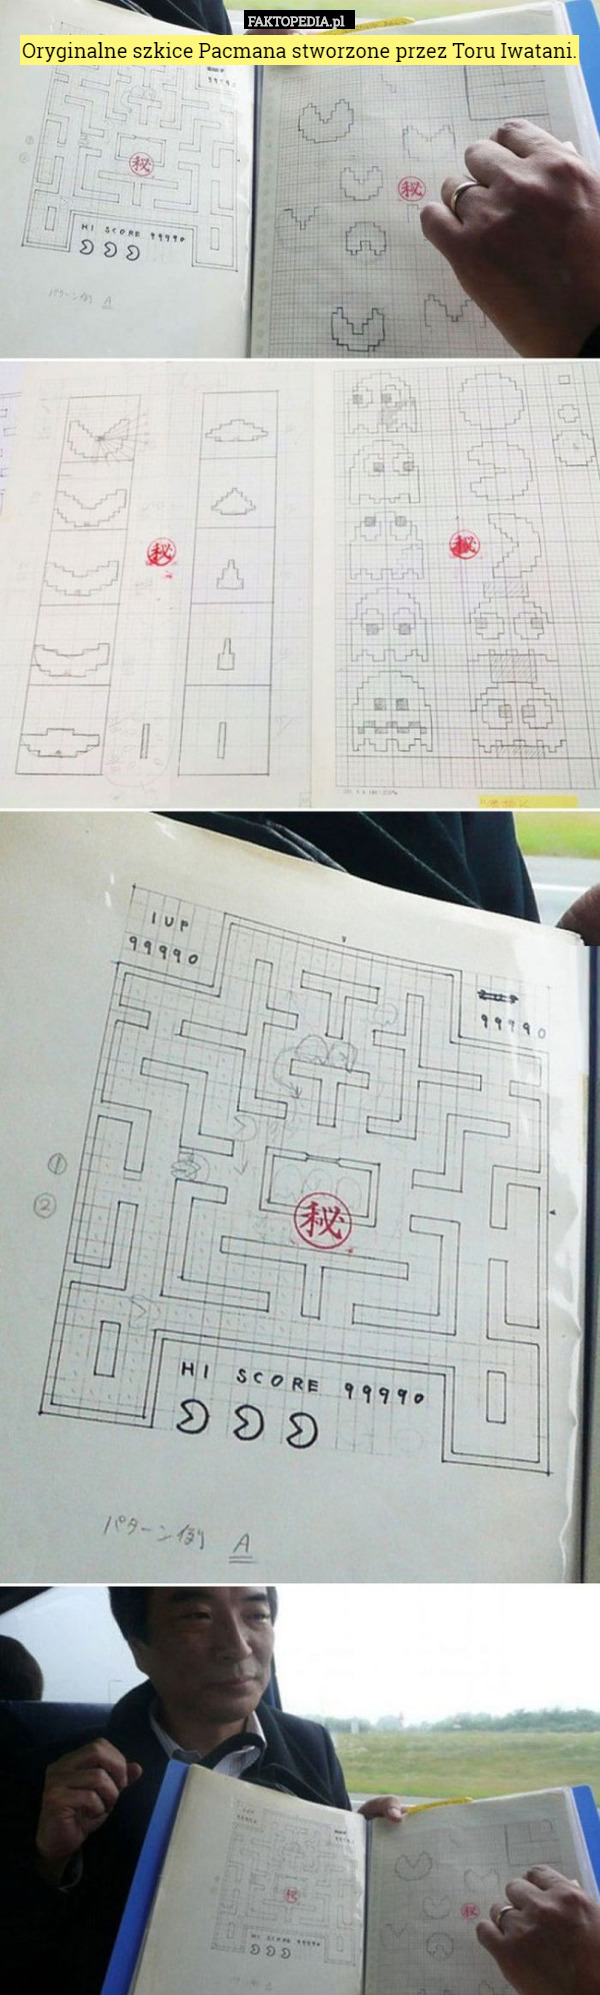 Oryginalne szkice Pacmana stworzone przez Toru Iwatani. 